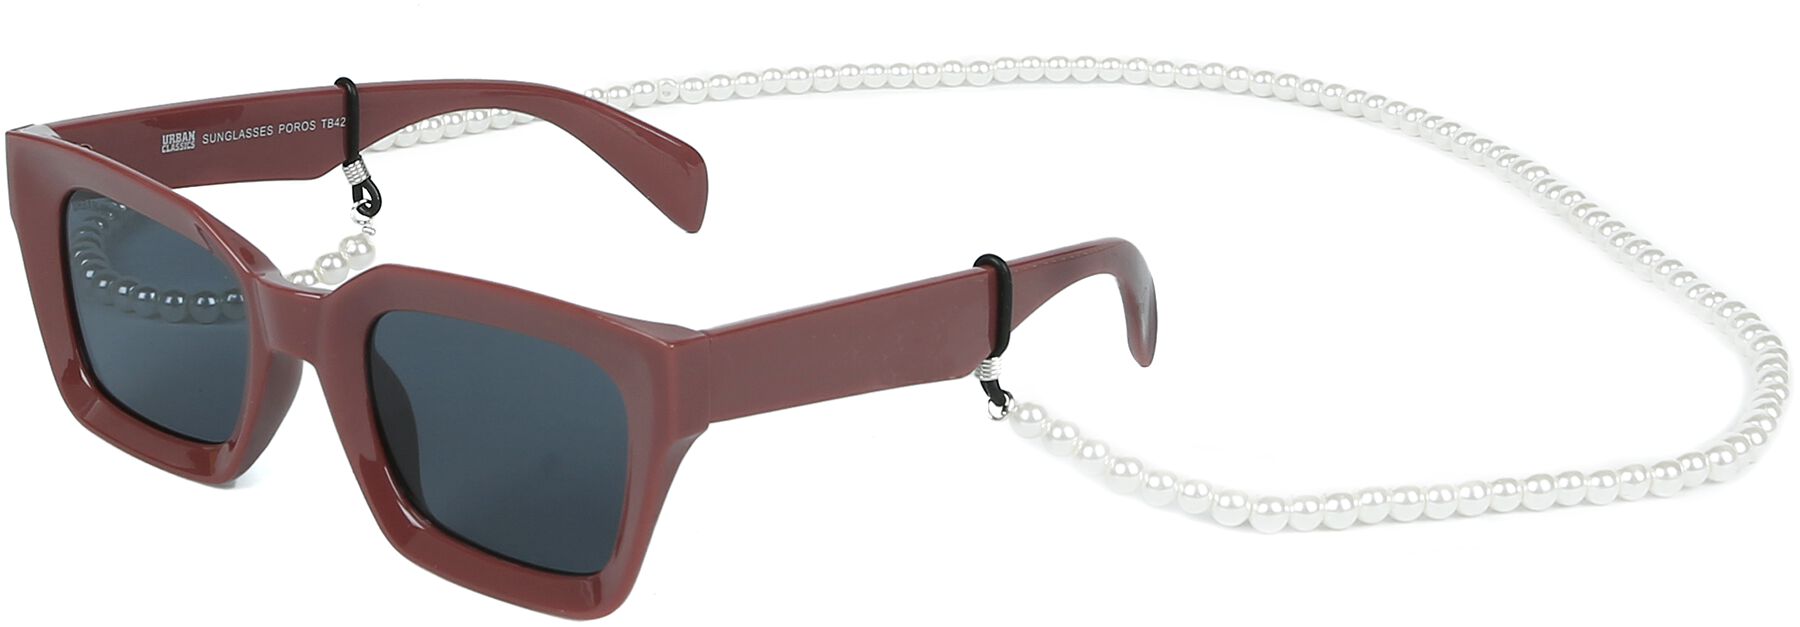 Sunglasses Poros With Chain Sonnenbrille schwarz/braun von Urban Classics